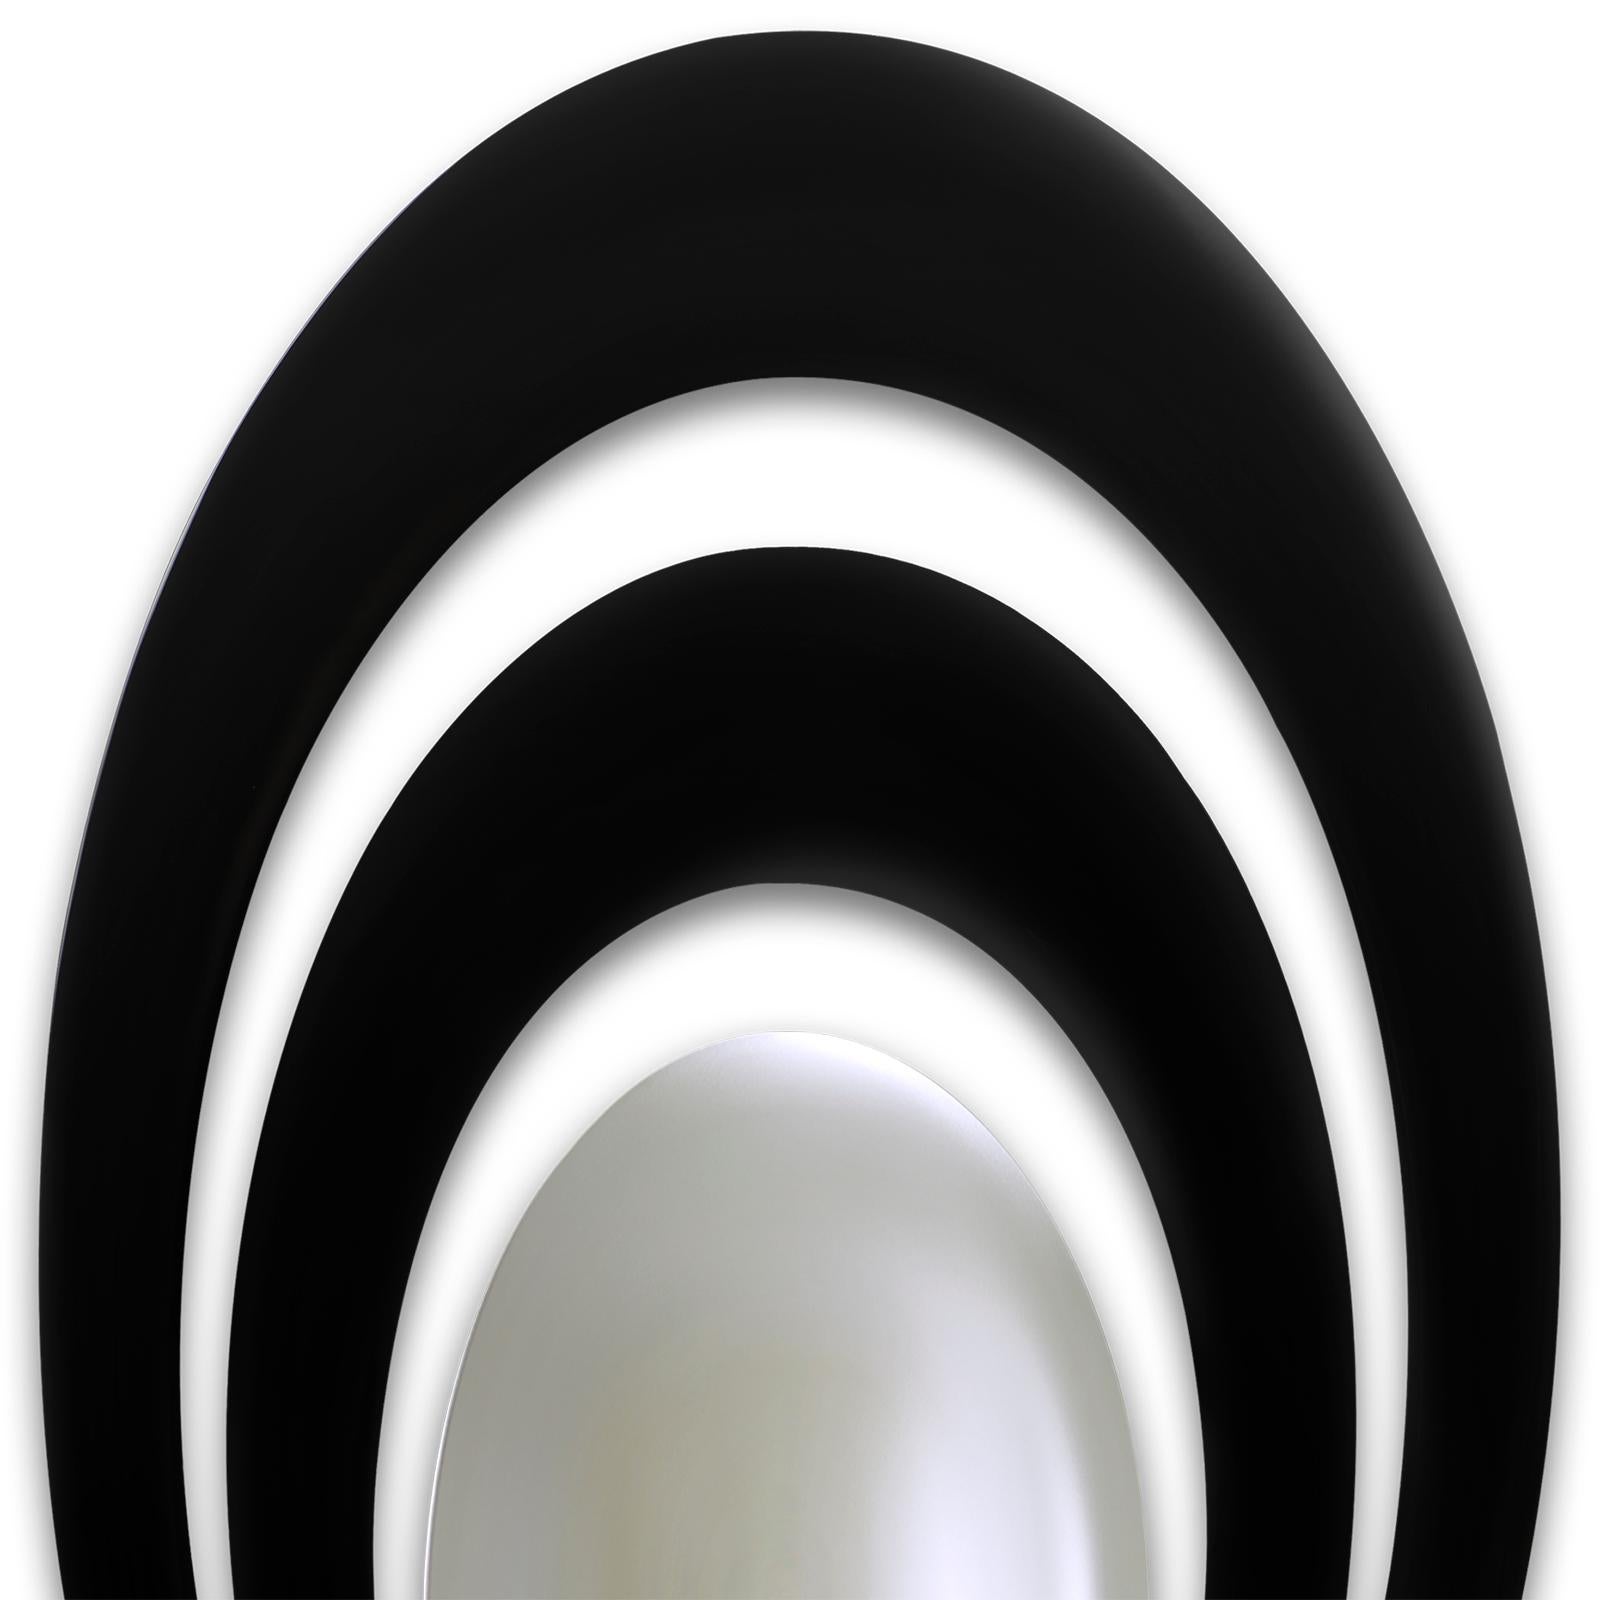 Spiegel Serail oval mit 2 runden Rahmen in
Massivholz handgeschnitzt in schwarz lackiert
beenden. Mit zentralem, rundem, konvexem Spiegel.
Auch in grüner Retro-Ausführung erhältlich.